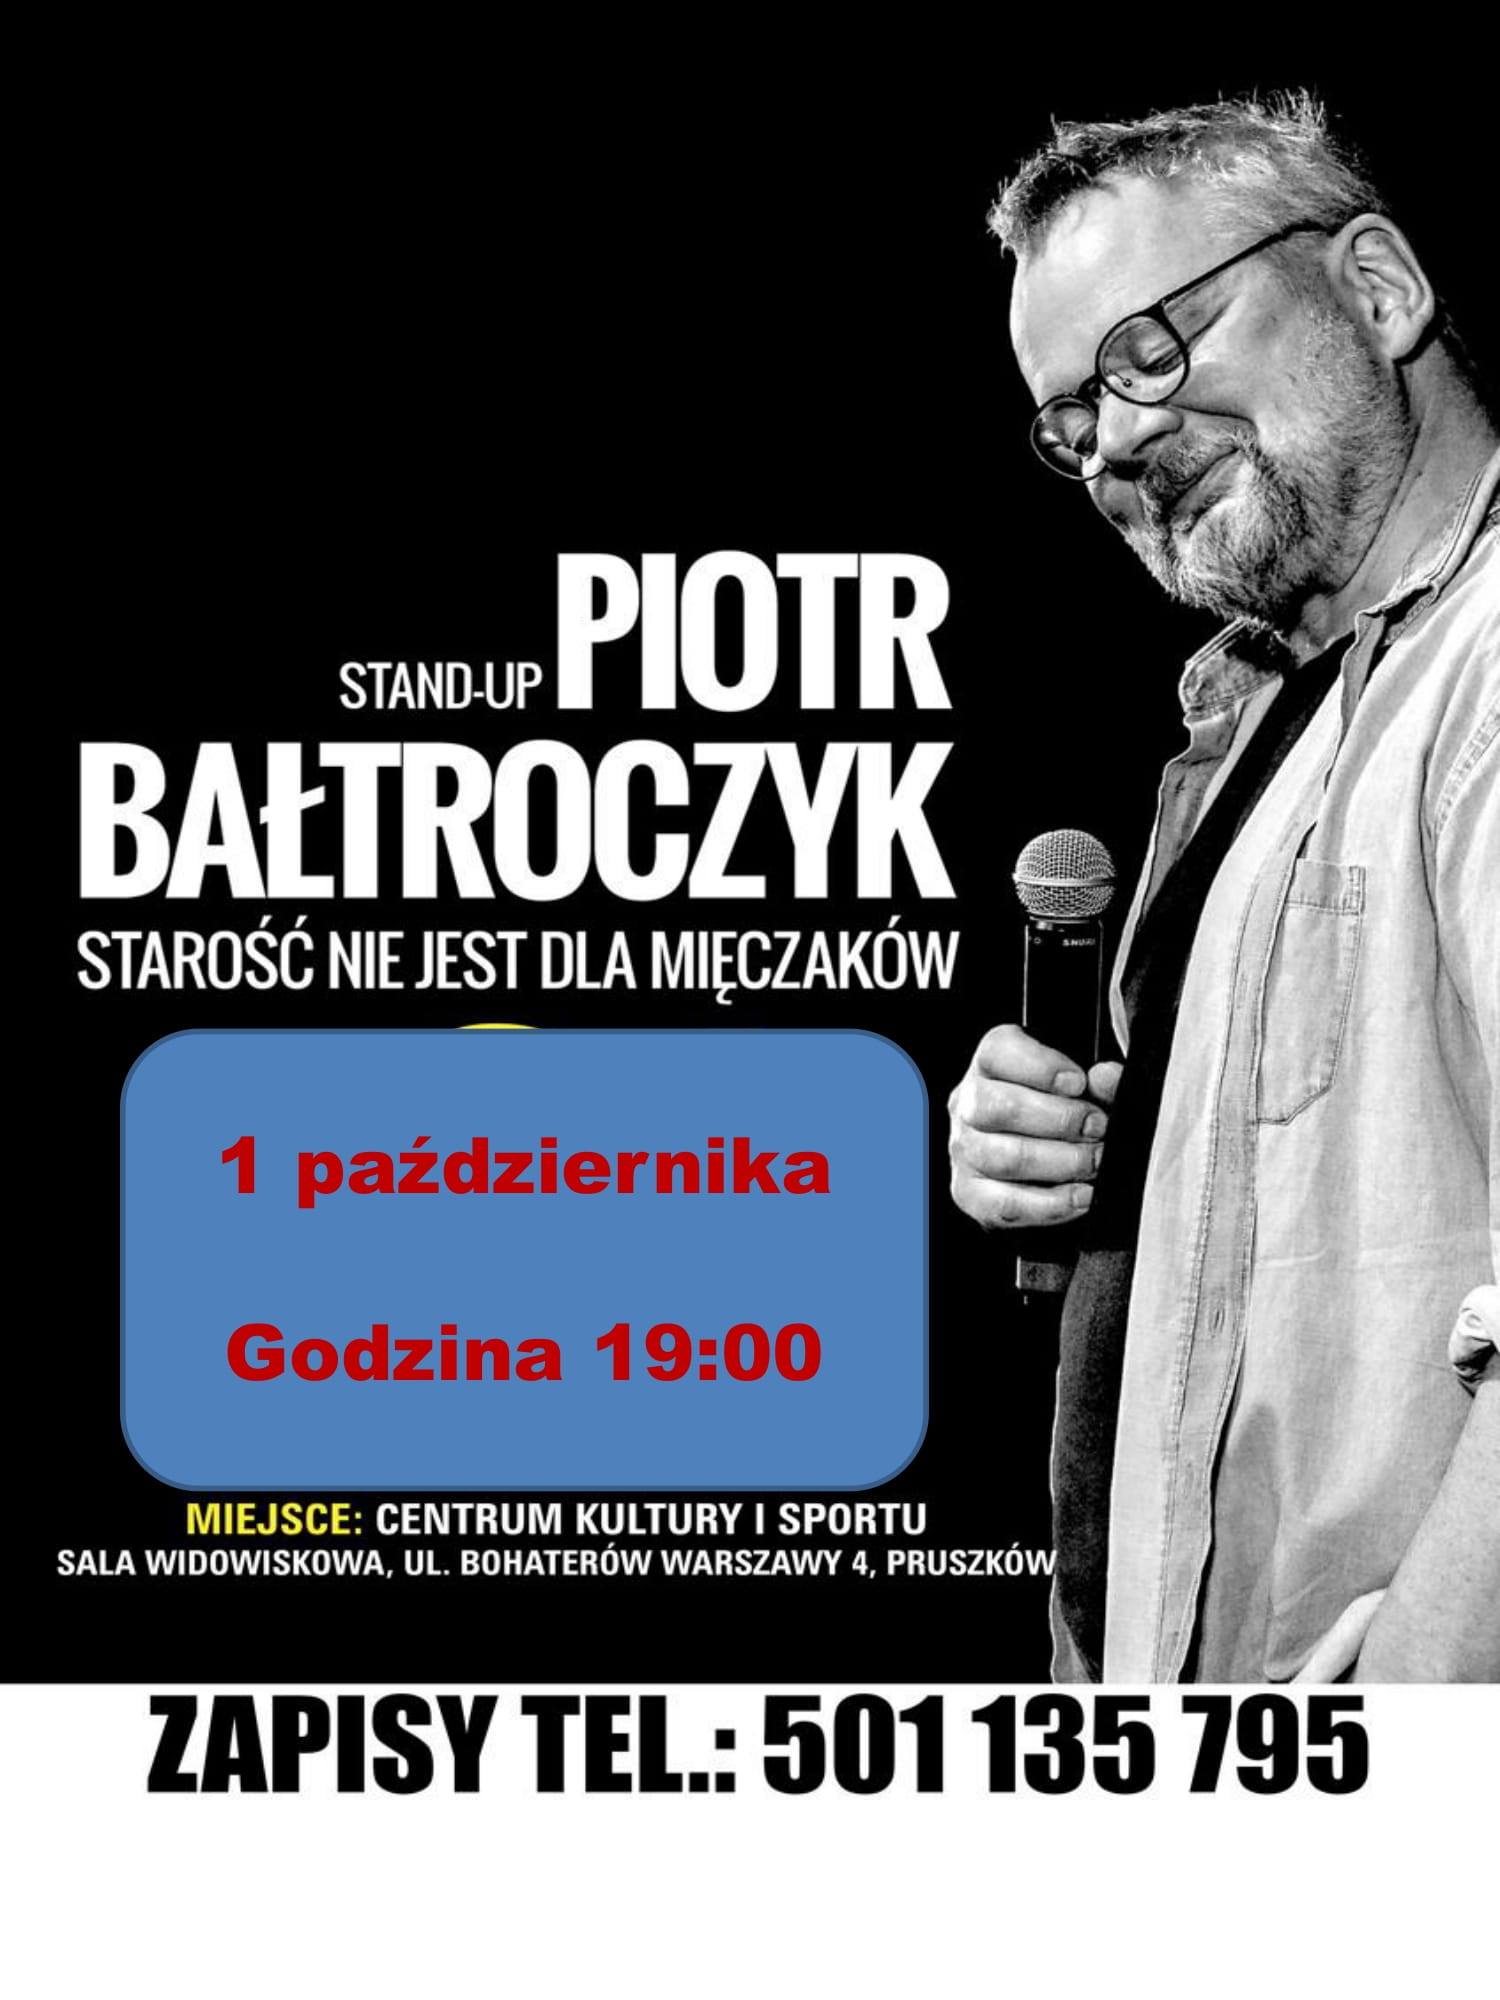 Występ Piotra Bałtroczyka w Pruszkowie